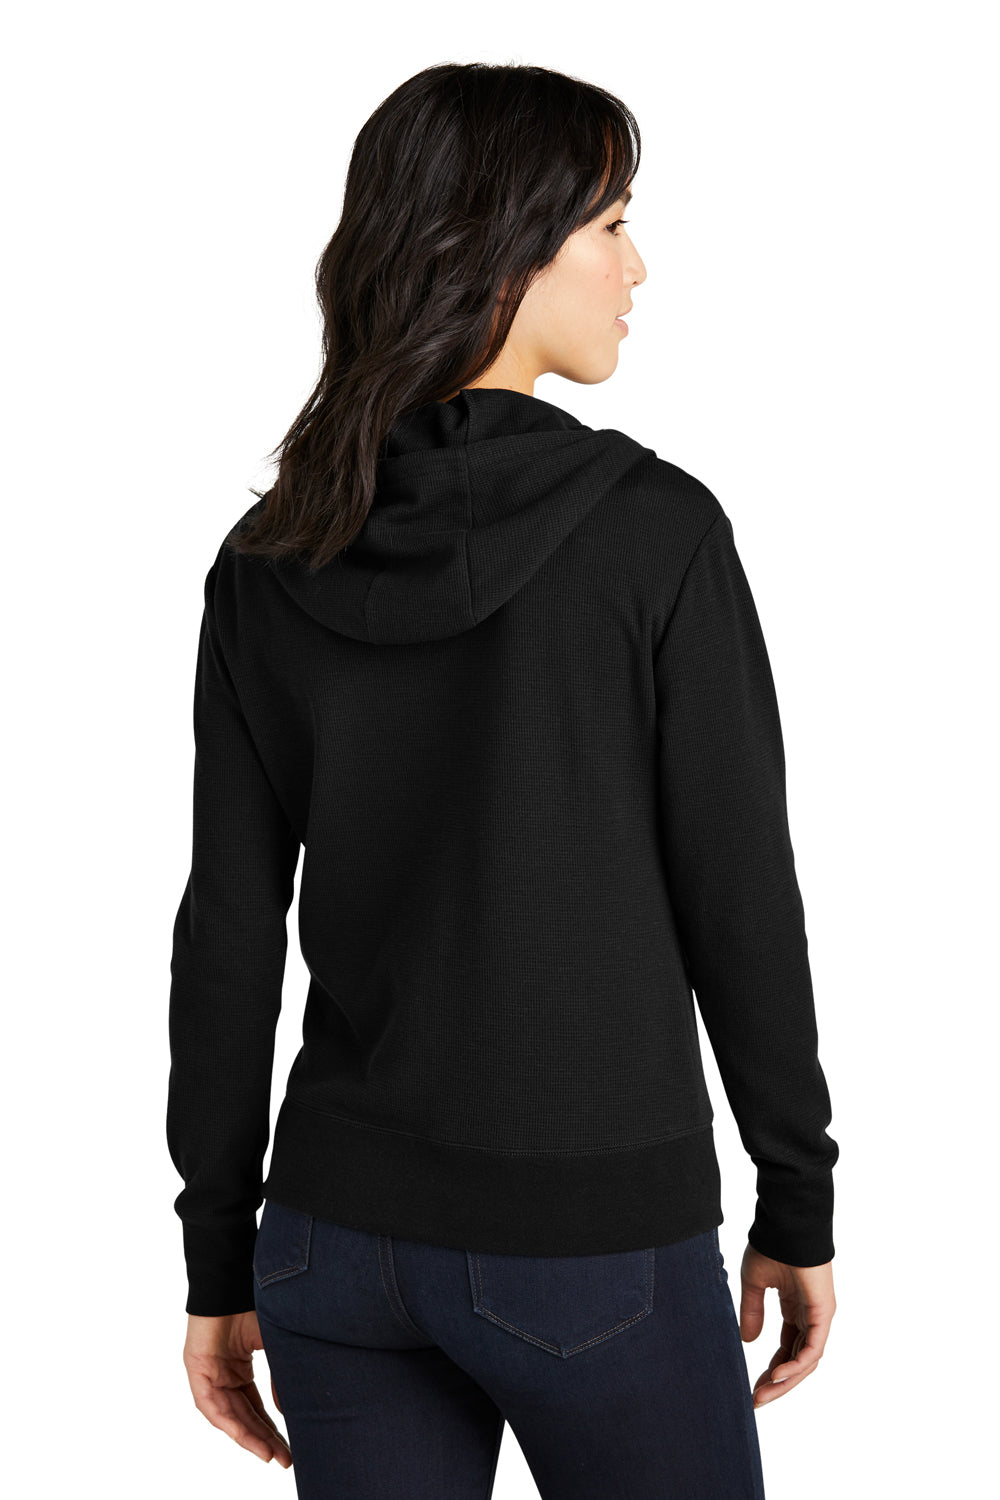 New Era LNEA141 Womens Black Thermal Full Zip Hooded Sweatshirt Hoodie —